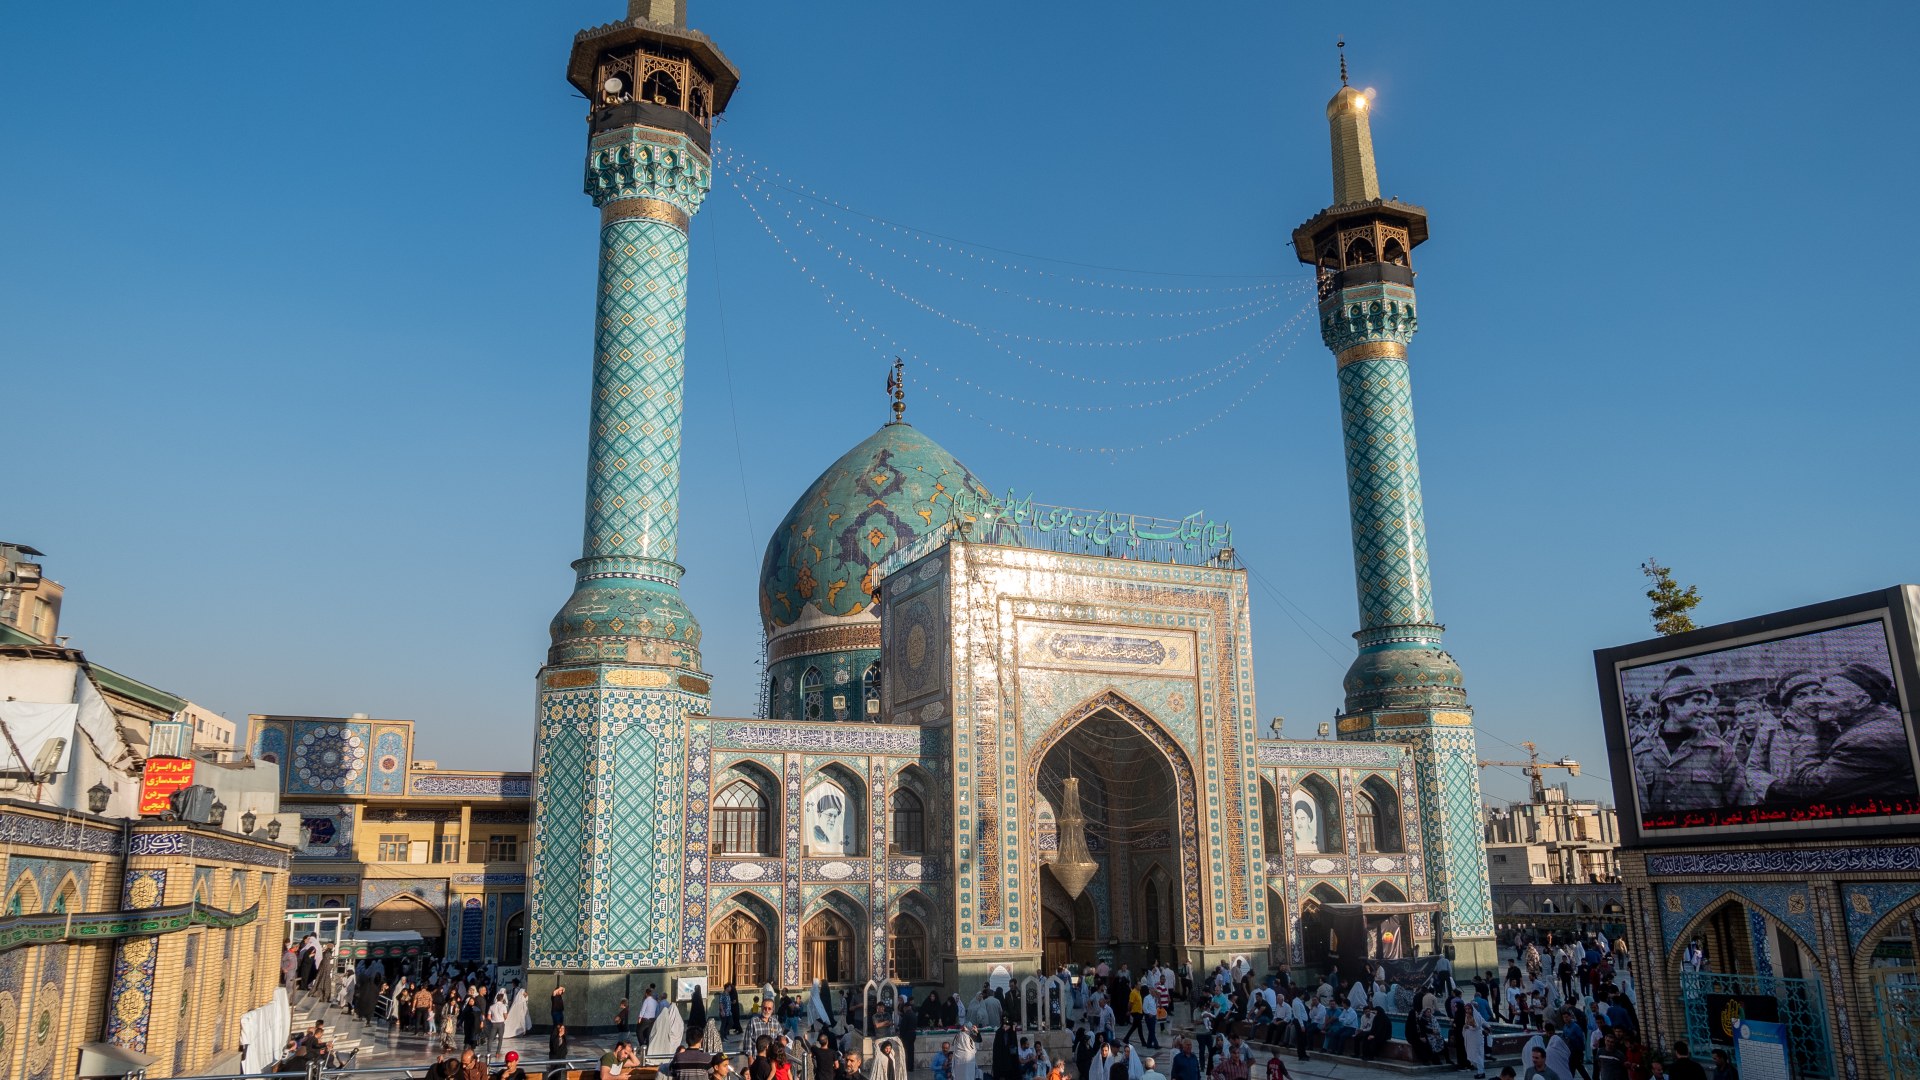 Hemmat Tajrish Mosque